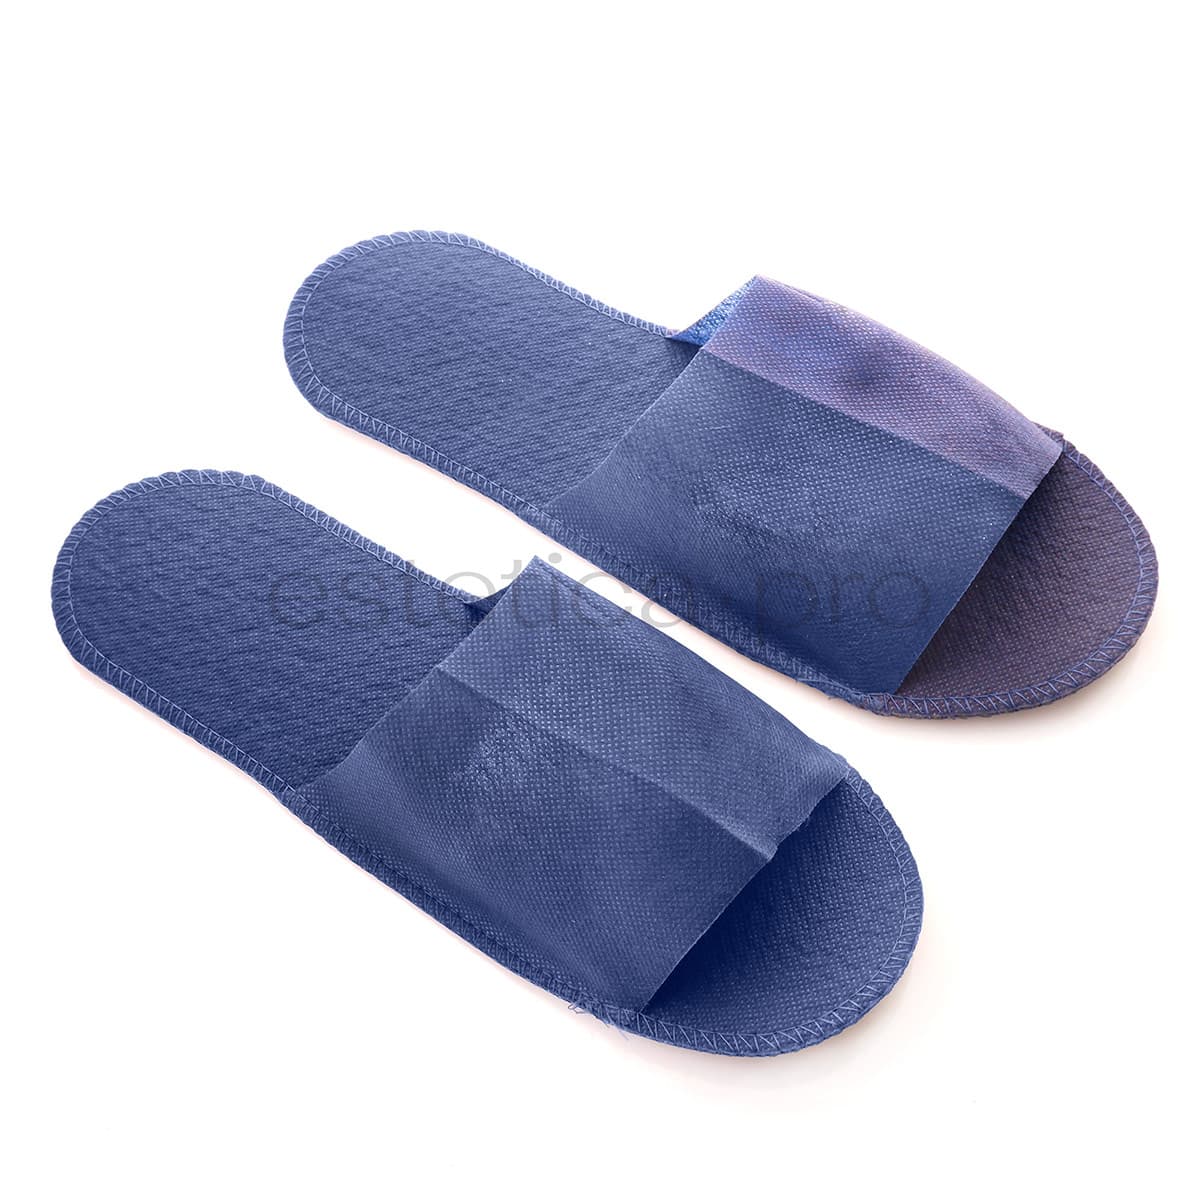 Тапочки с открытым носком на жесткой основе, 1 пара - синие